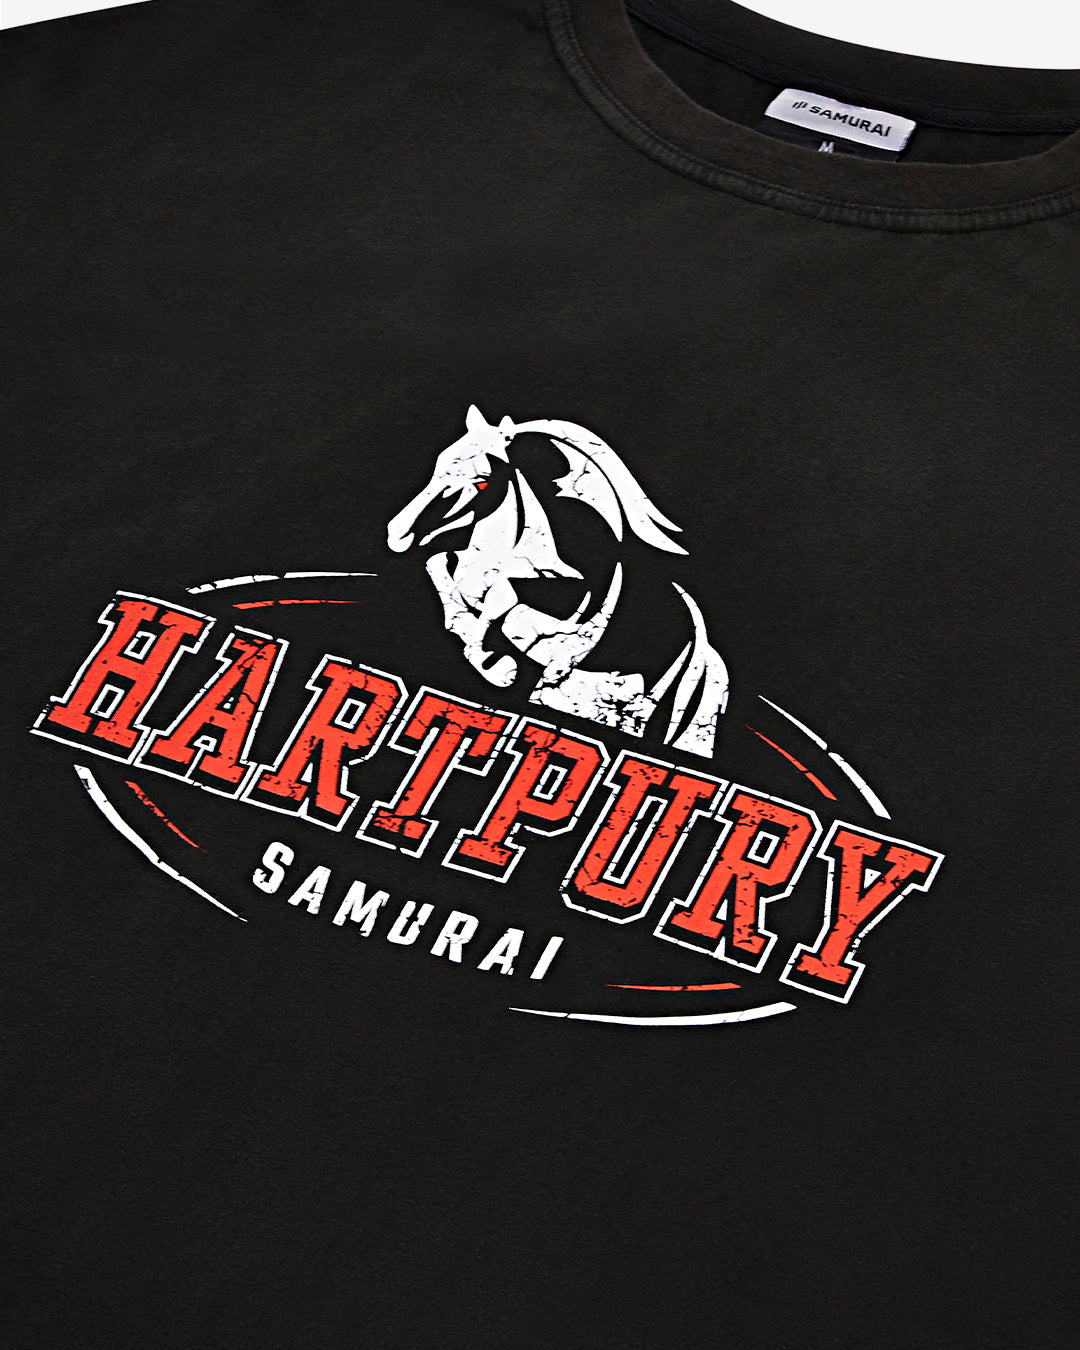 OC: 00-12 - Women's Hartpury T-Shirt - Black